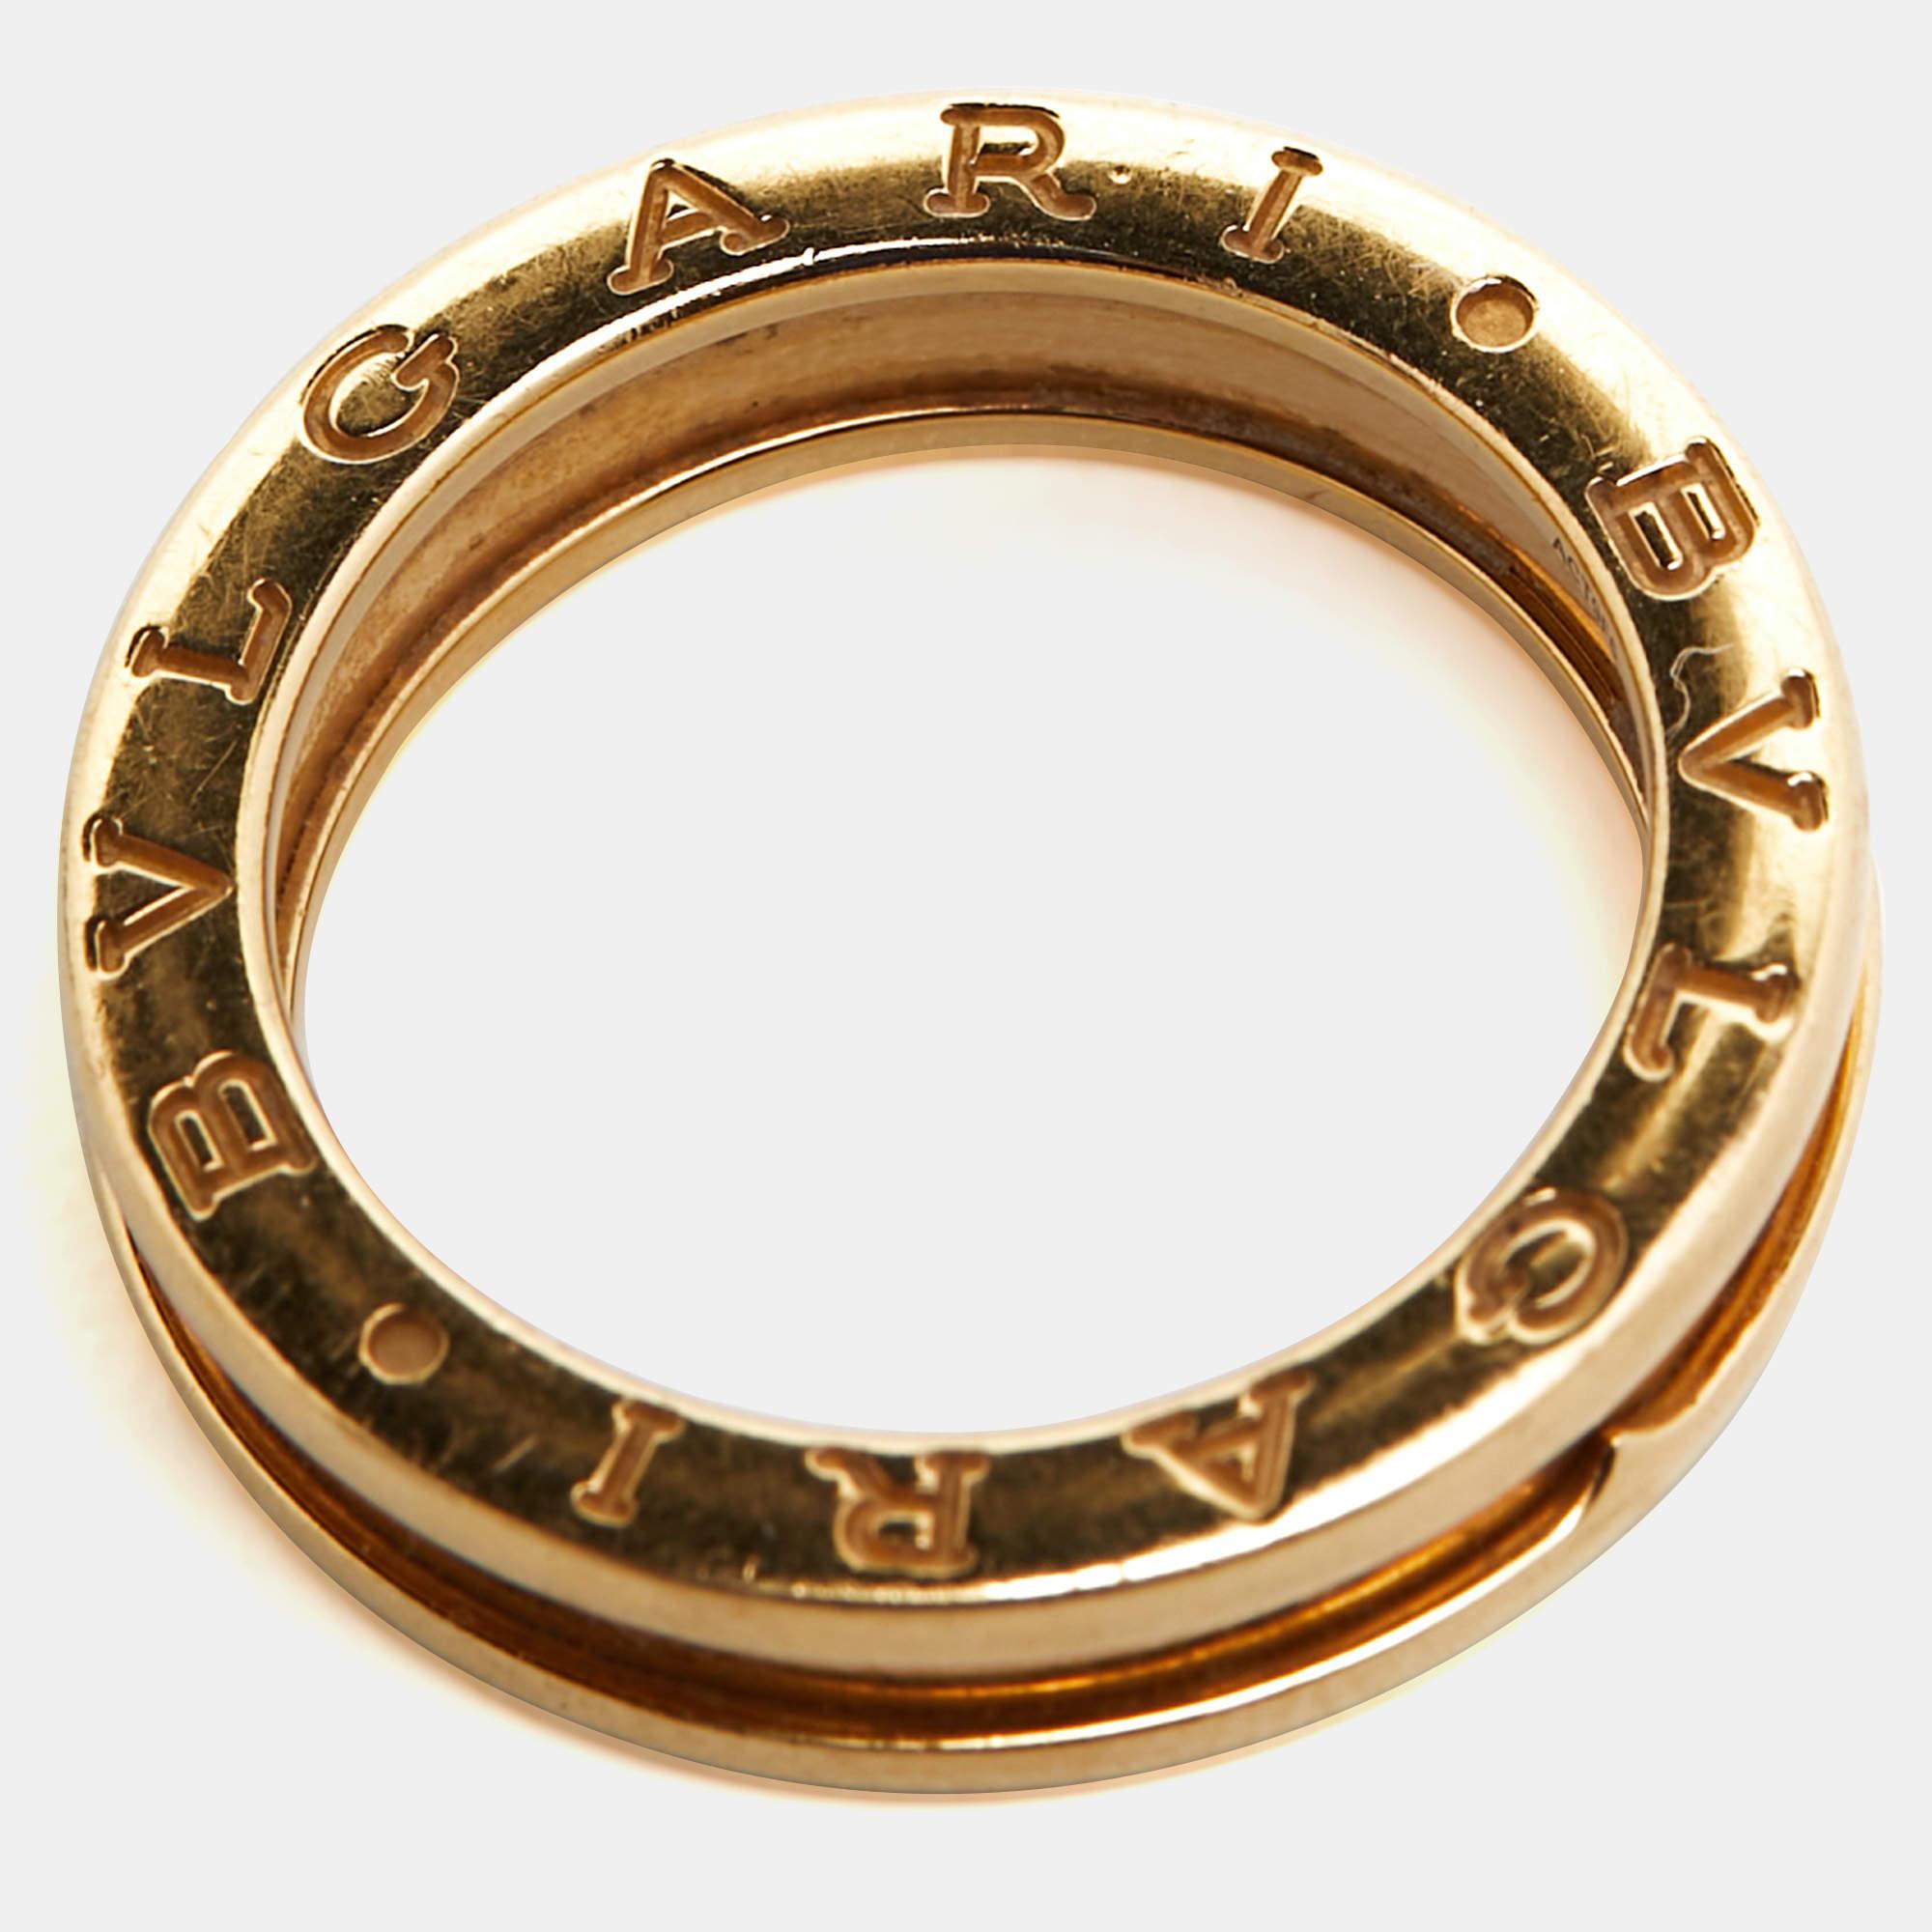 Women's Bvlgari B.Zero1 1-Band 18k Yellow Gold Ring Size 55 For Sale